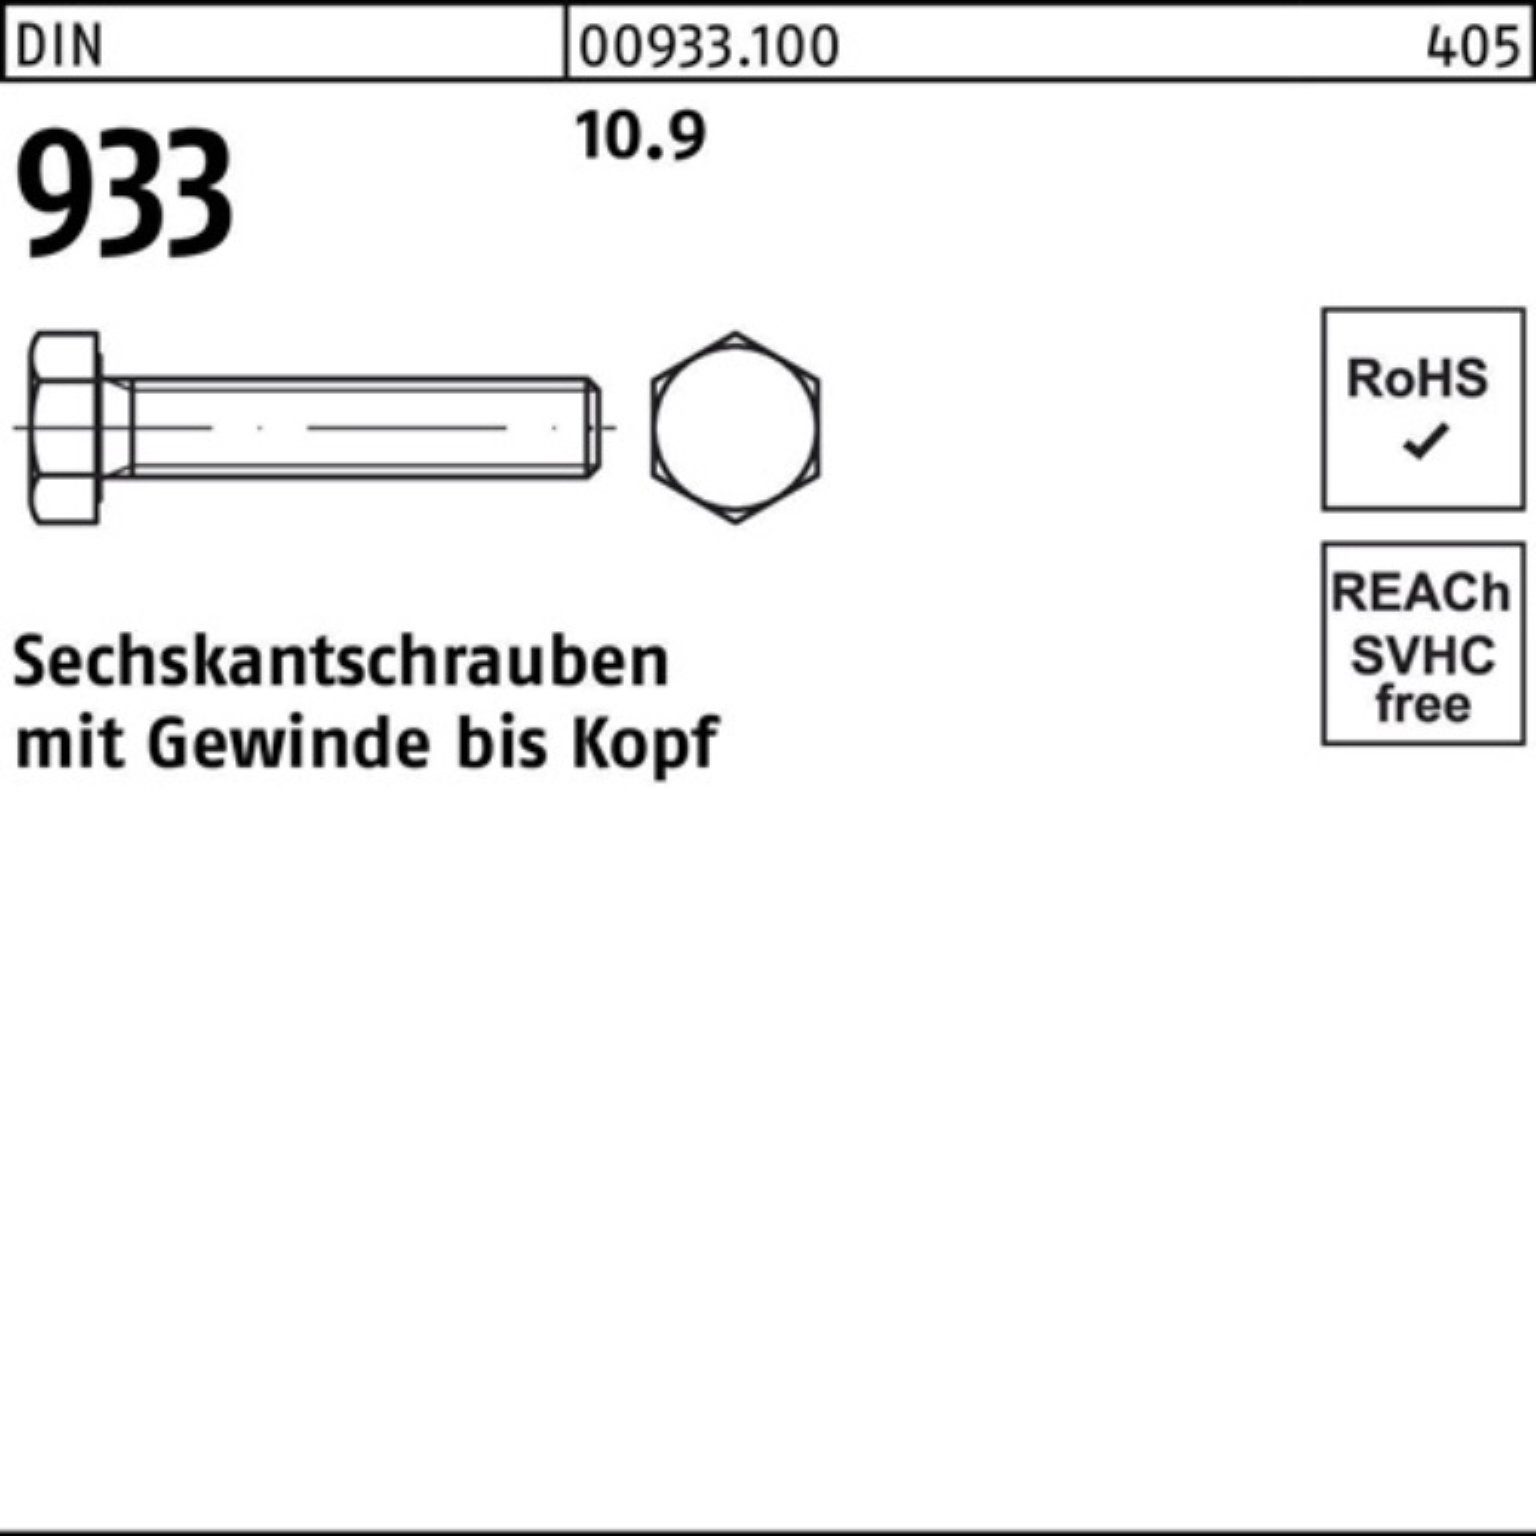 Sechskantschraube M20x 93 DIN Pack DIN 25 VG 100er 10.9 933 110 Stück Reyher Sechskantschraube